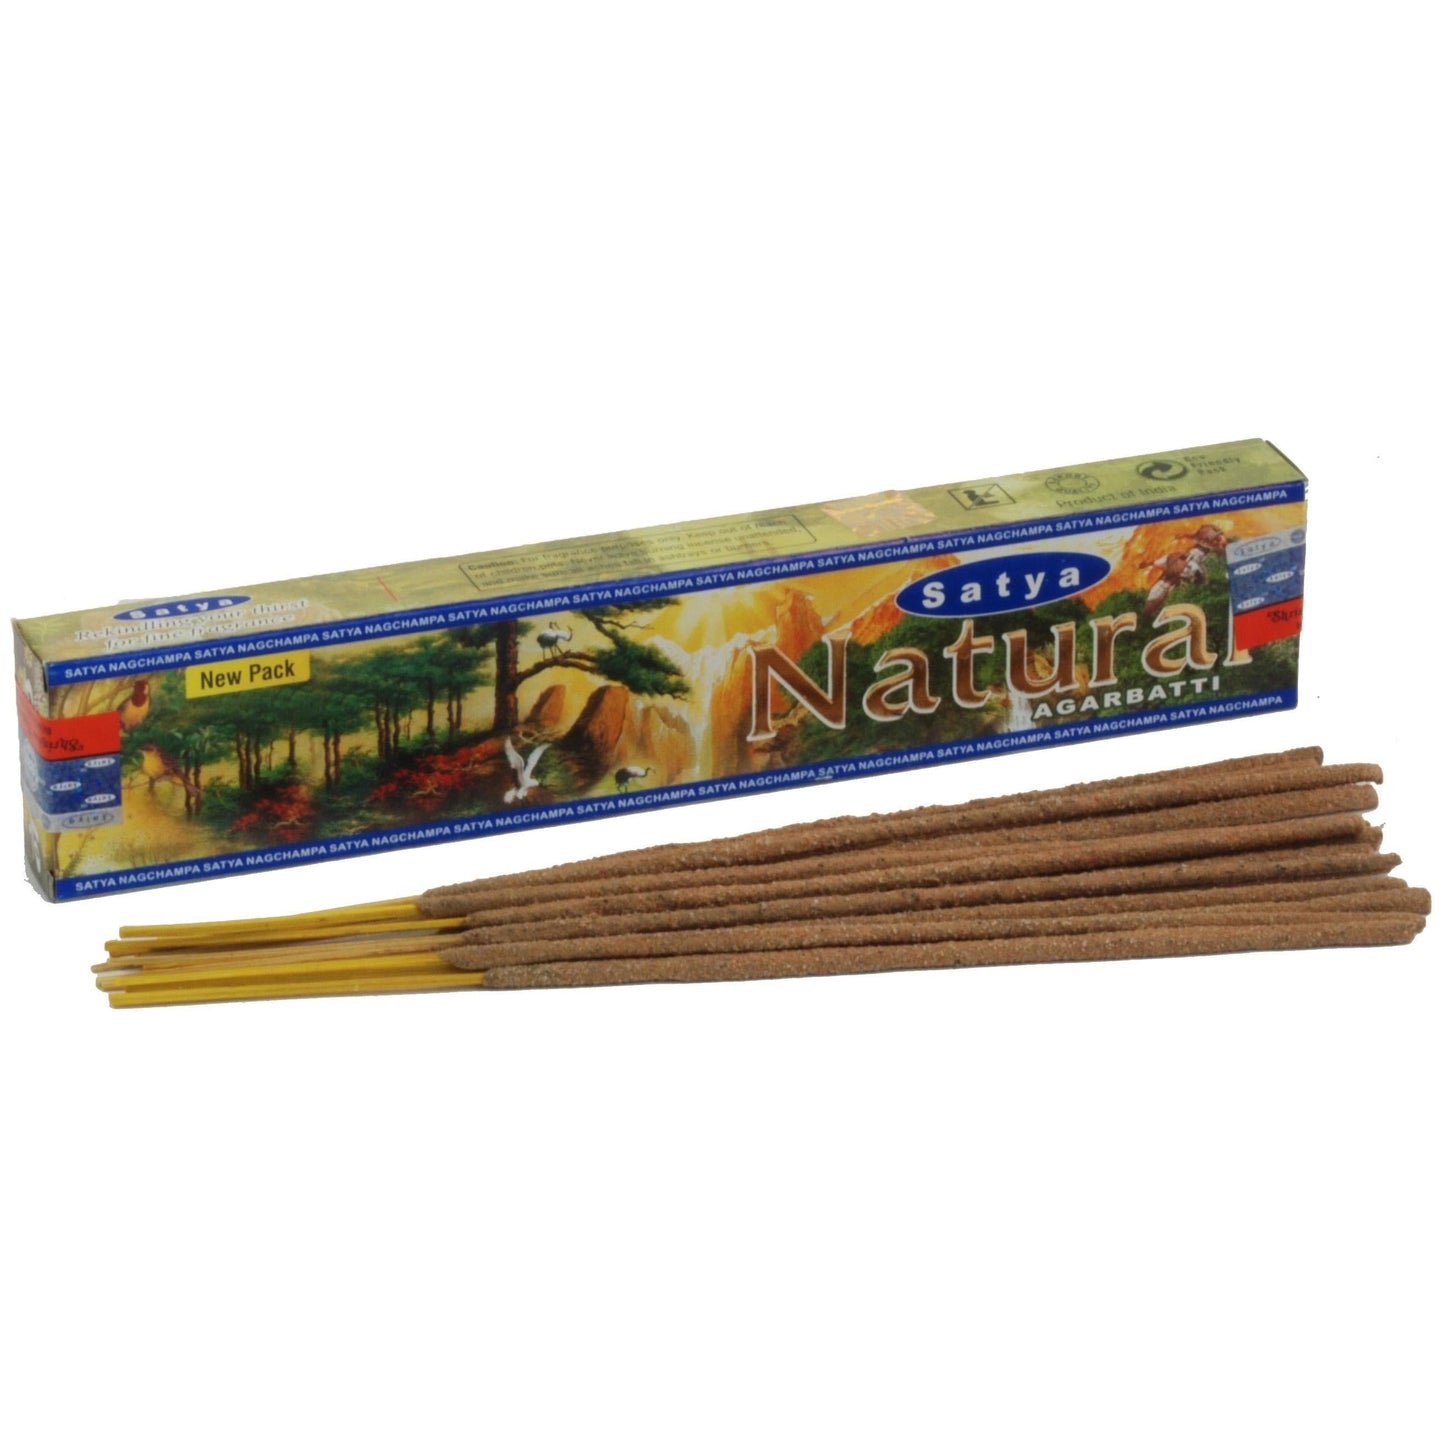 Satya Natural Masala Incense Sticks.